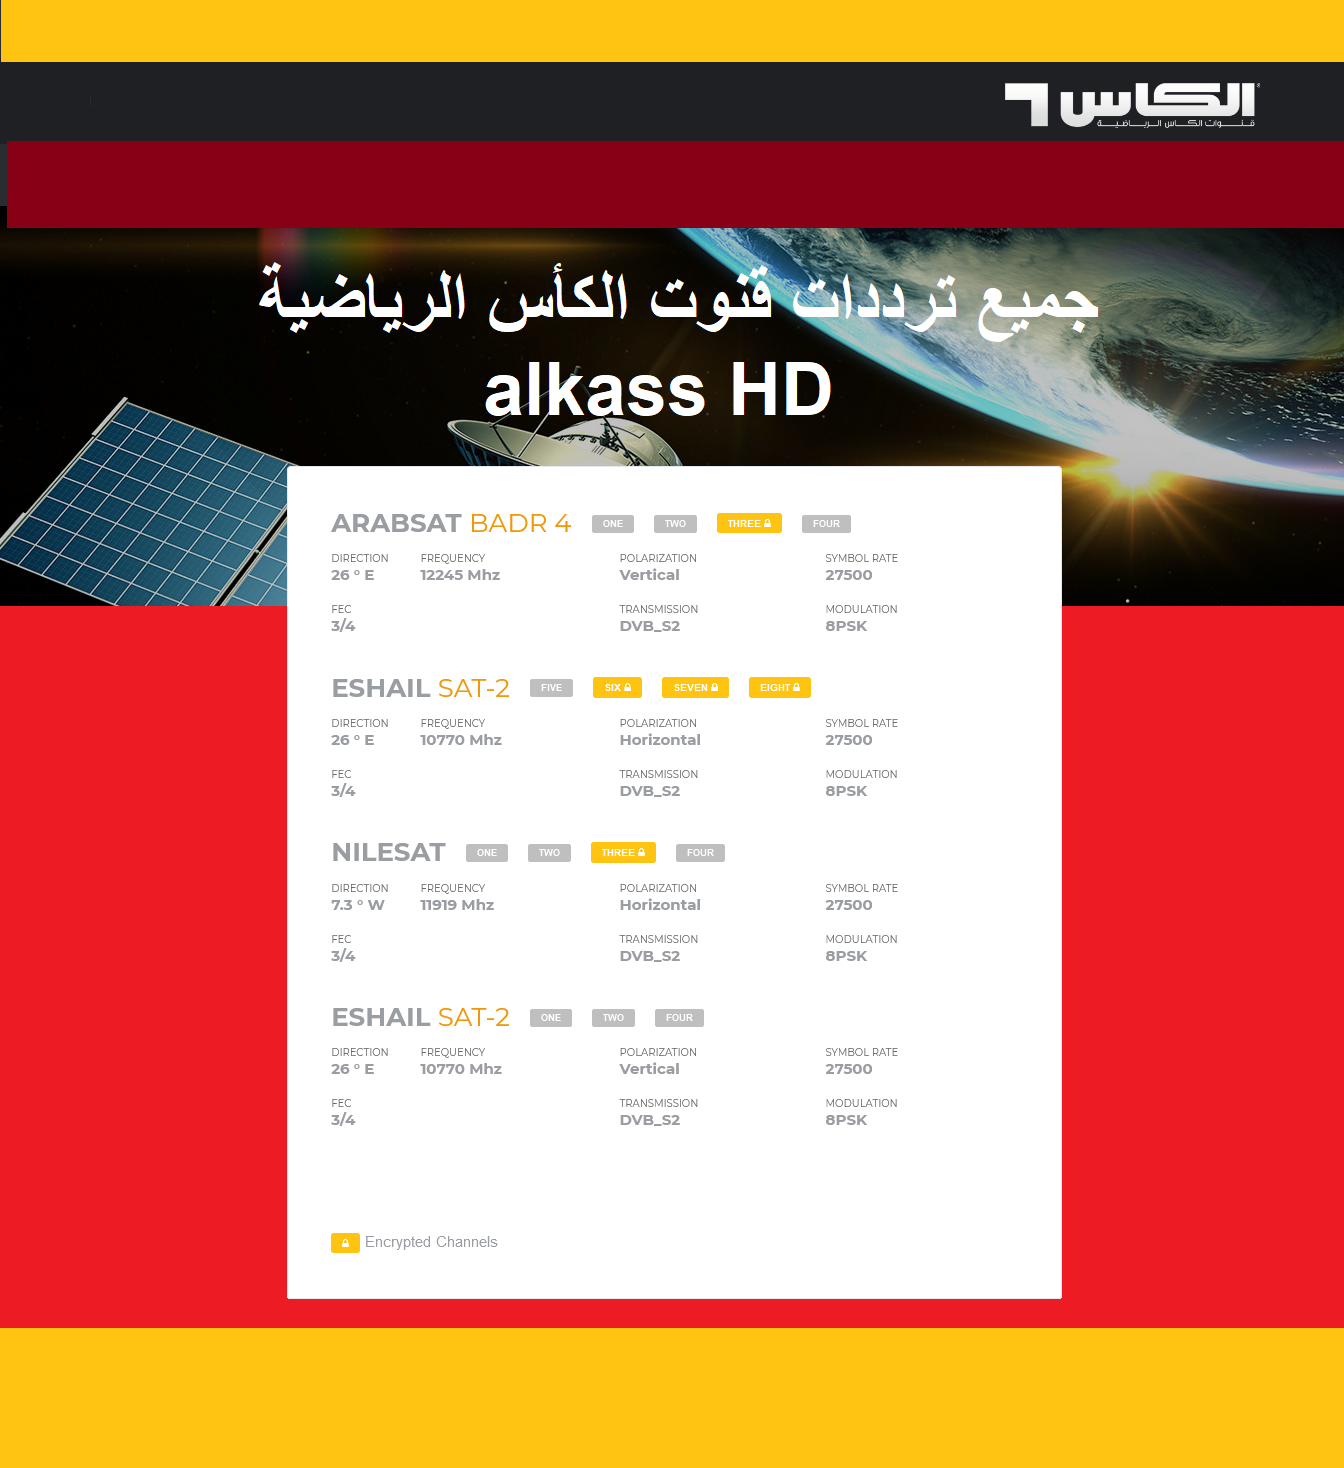 تردد قنوات الكأس سبورت الرياضية alkass HD المفتوحة المجاني على نايل سات عرب سات بدر